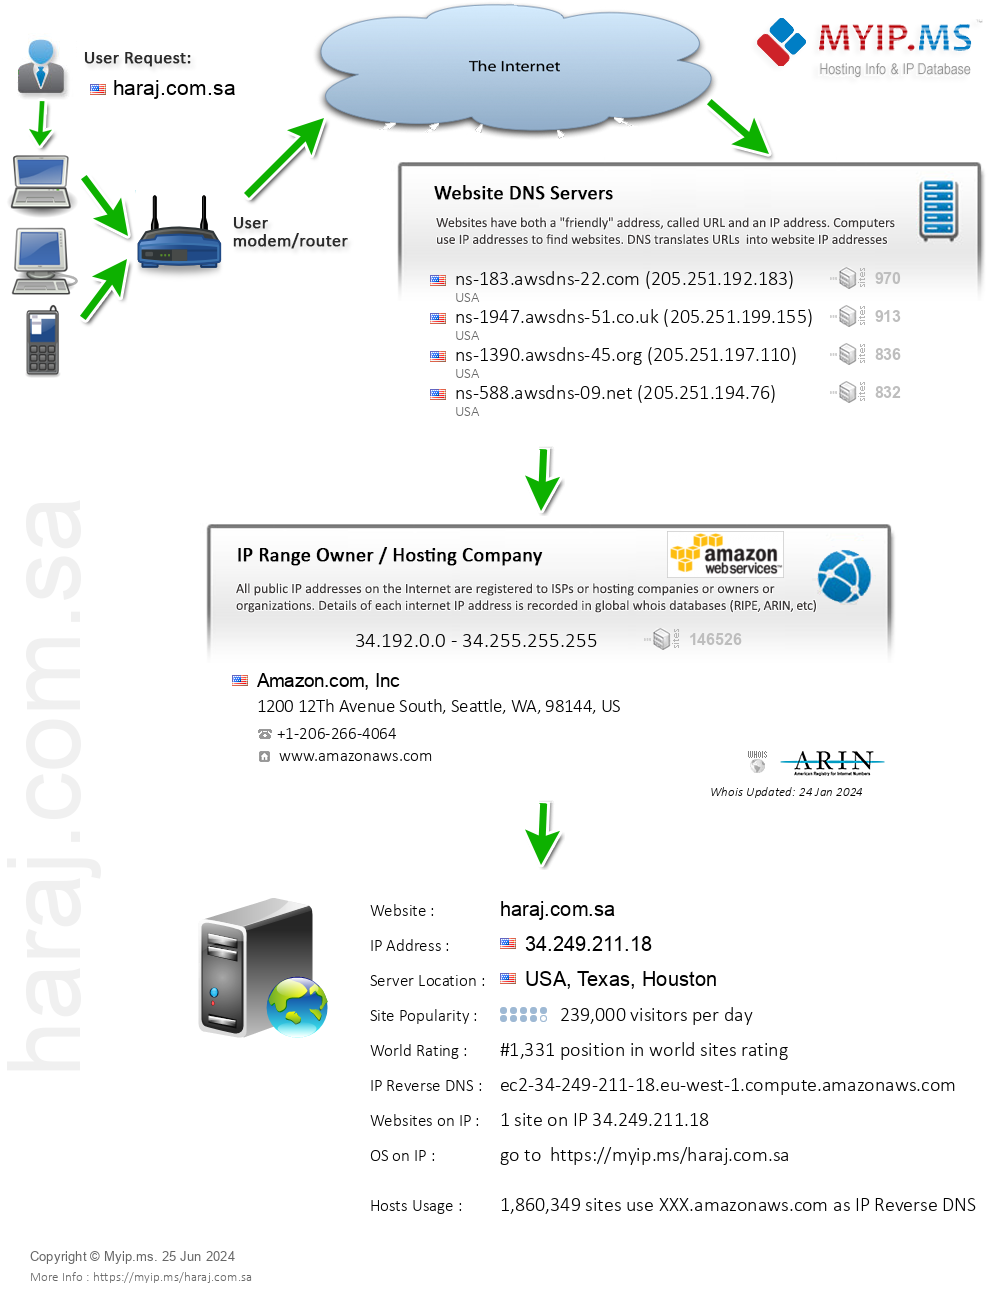 Haraj.com.sa - Website Hosting Visual IP Diagram